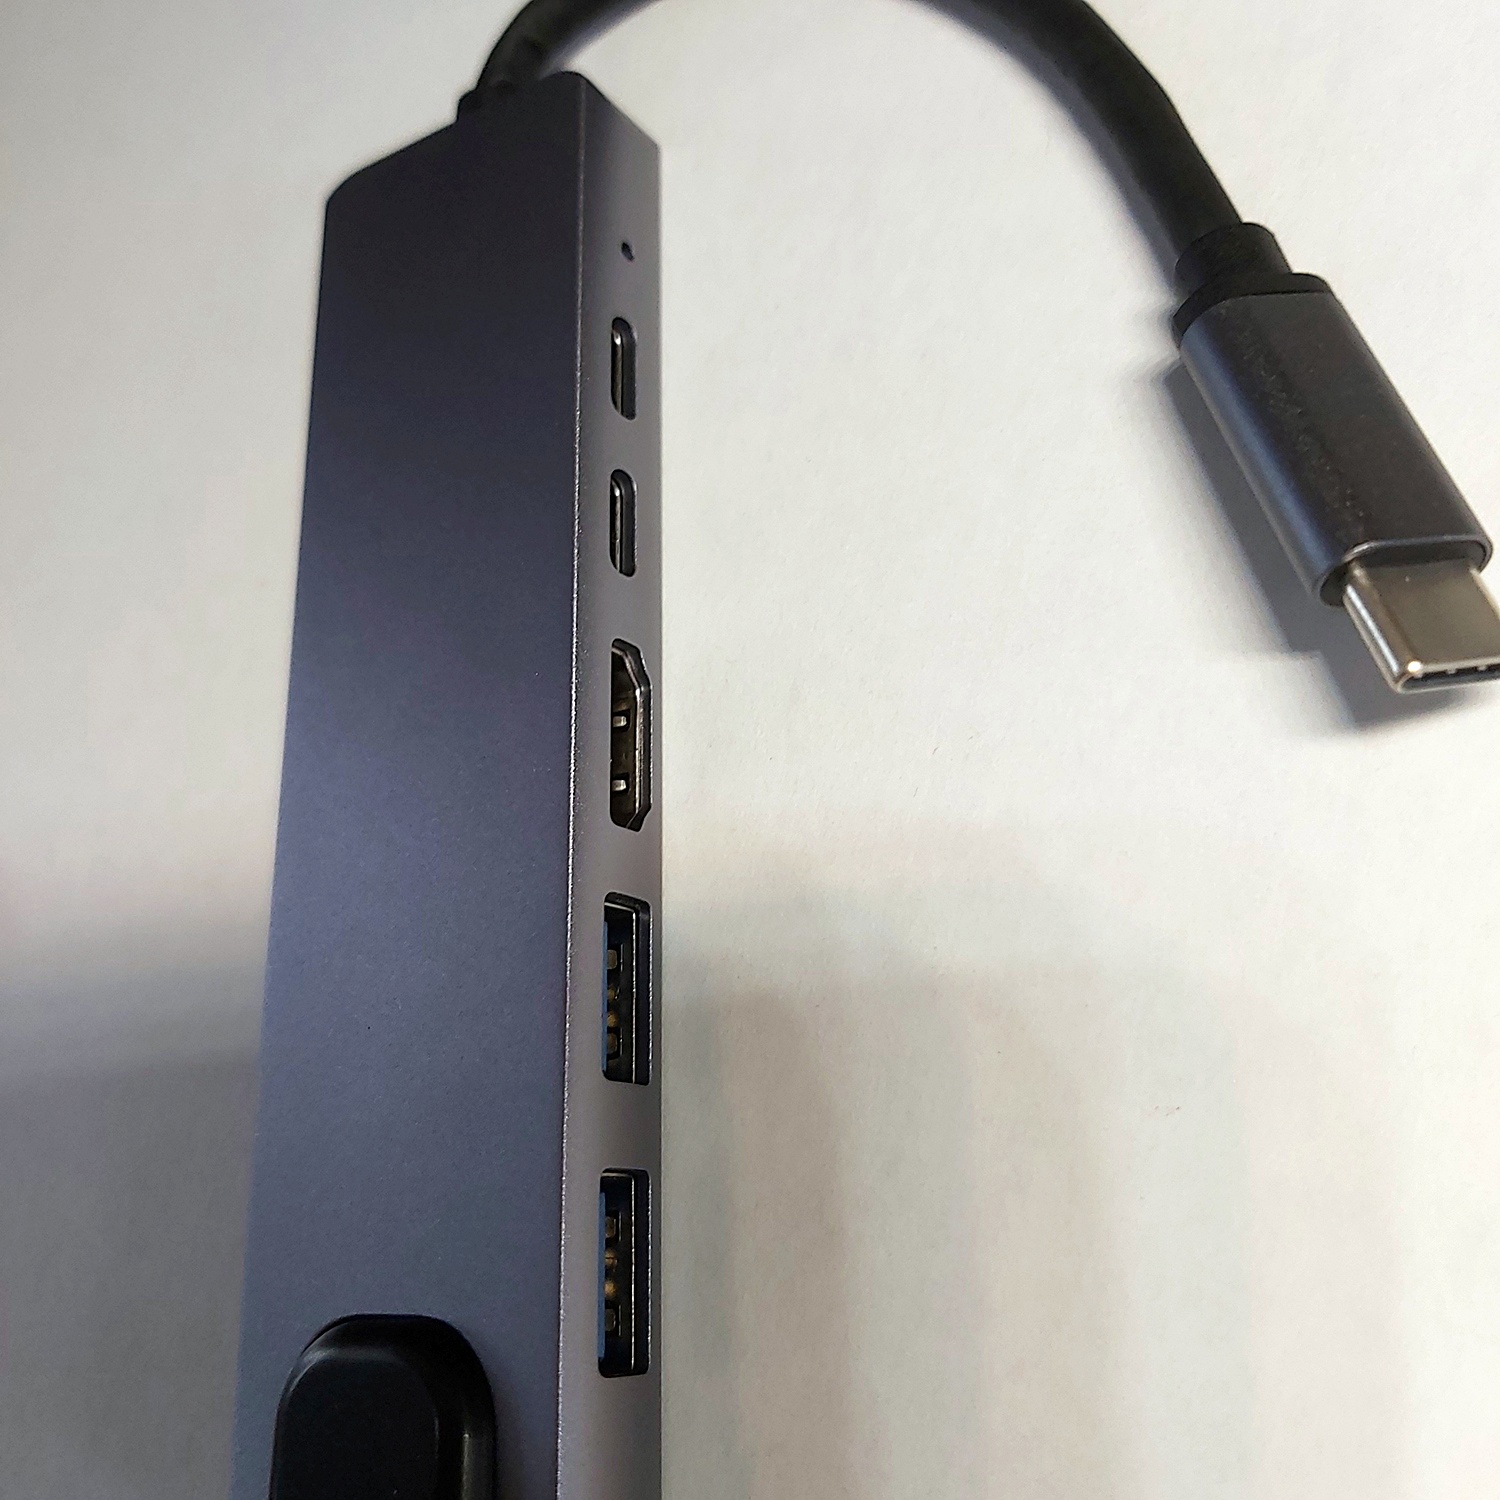 Hub chuyển đổi USB Type C tích hợp cổng mạng Lan , cổng sạc nhanh PD Type C 3.0, 2 cổng  USB 3.0 và cổng HDMI chuẩn 4K dành cho Macbook, SamSung Dex, HP, Acer, Asus